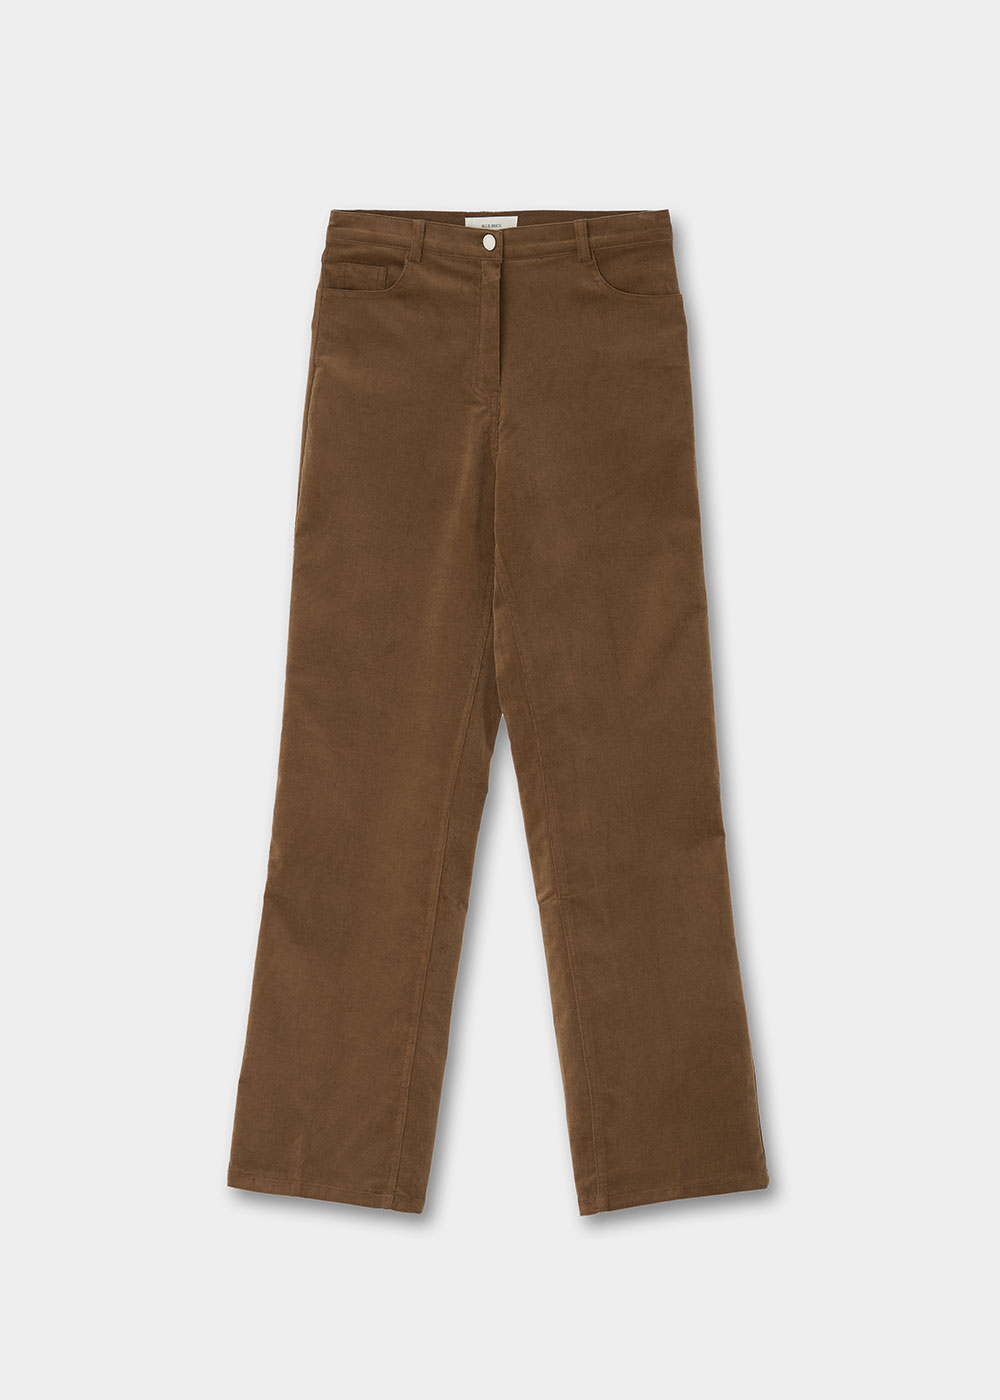 블루브릭,Corduroy boot cut pants (brown)